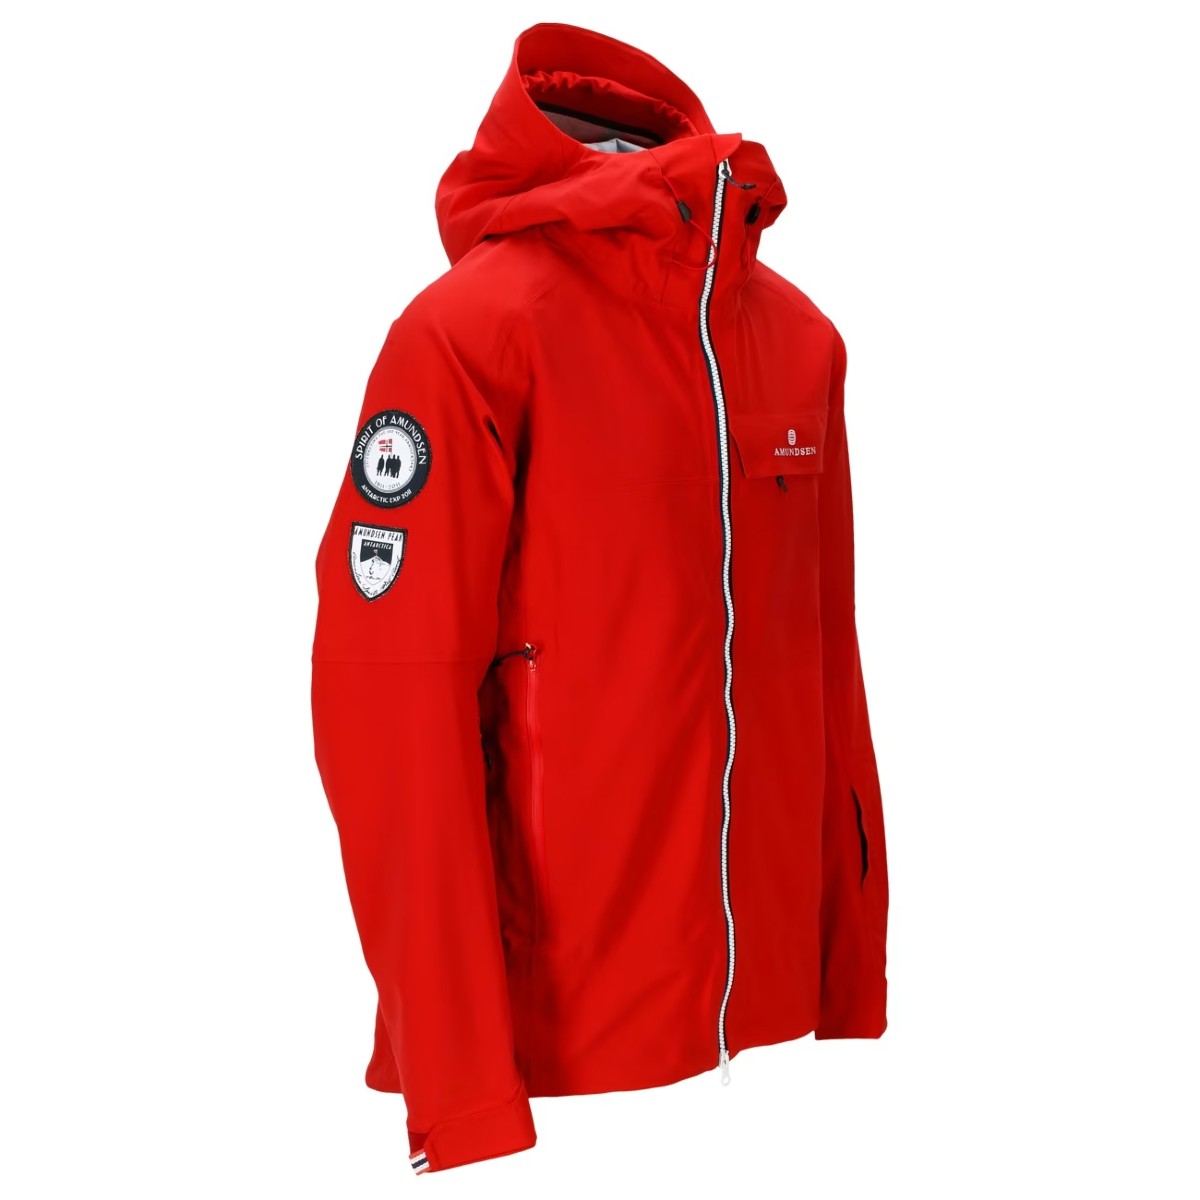 Amundsen Peak Jacket Mens - Red